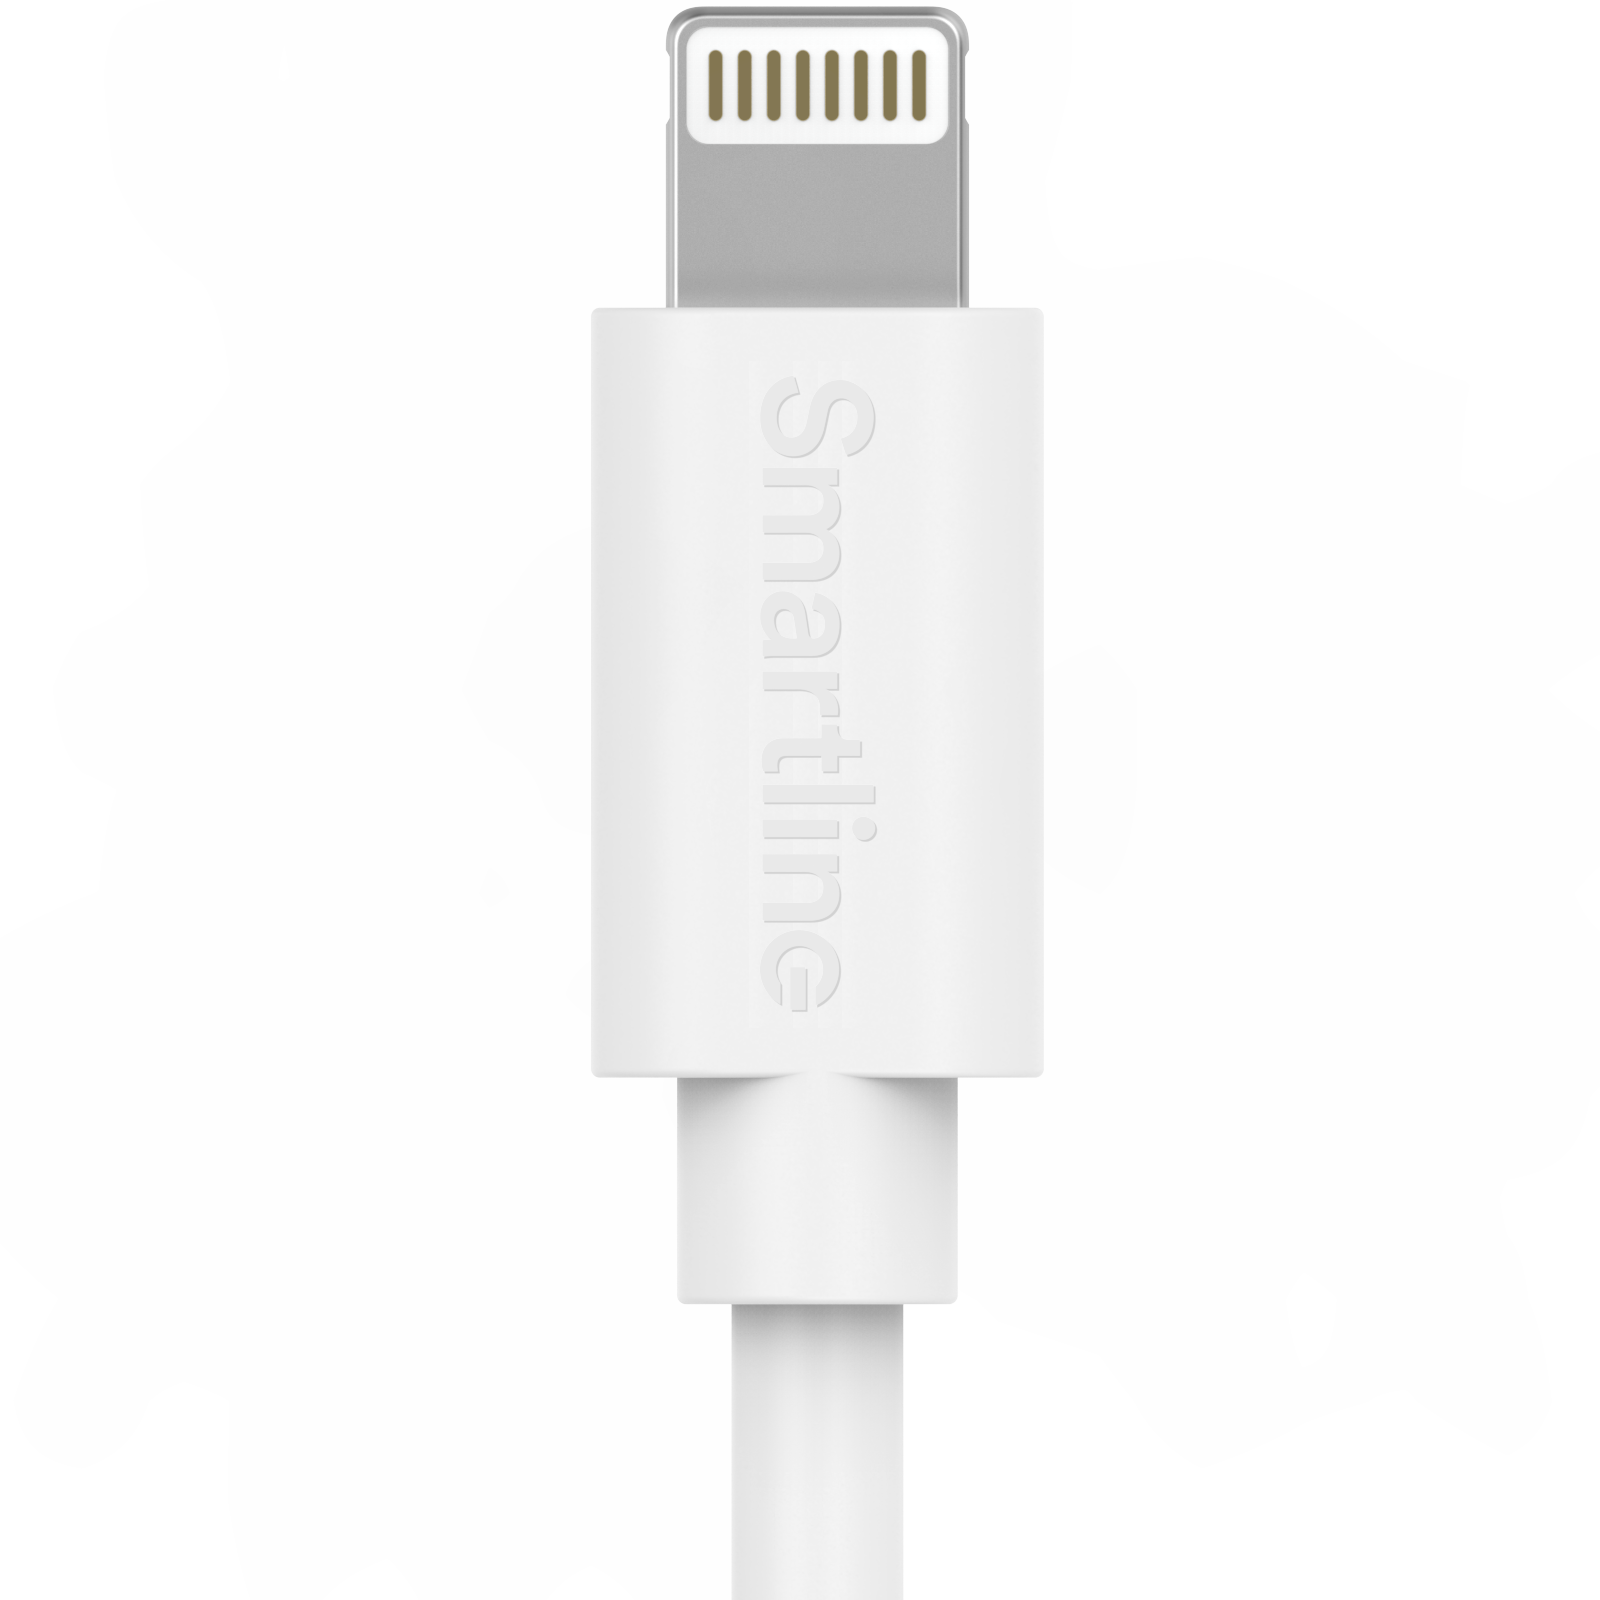 Pitkä USB-kaapeli USB-C - Lightning 2m iPhone 12/12 Pro valkoinen